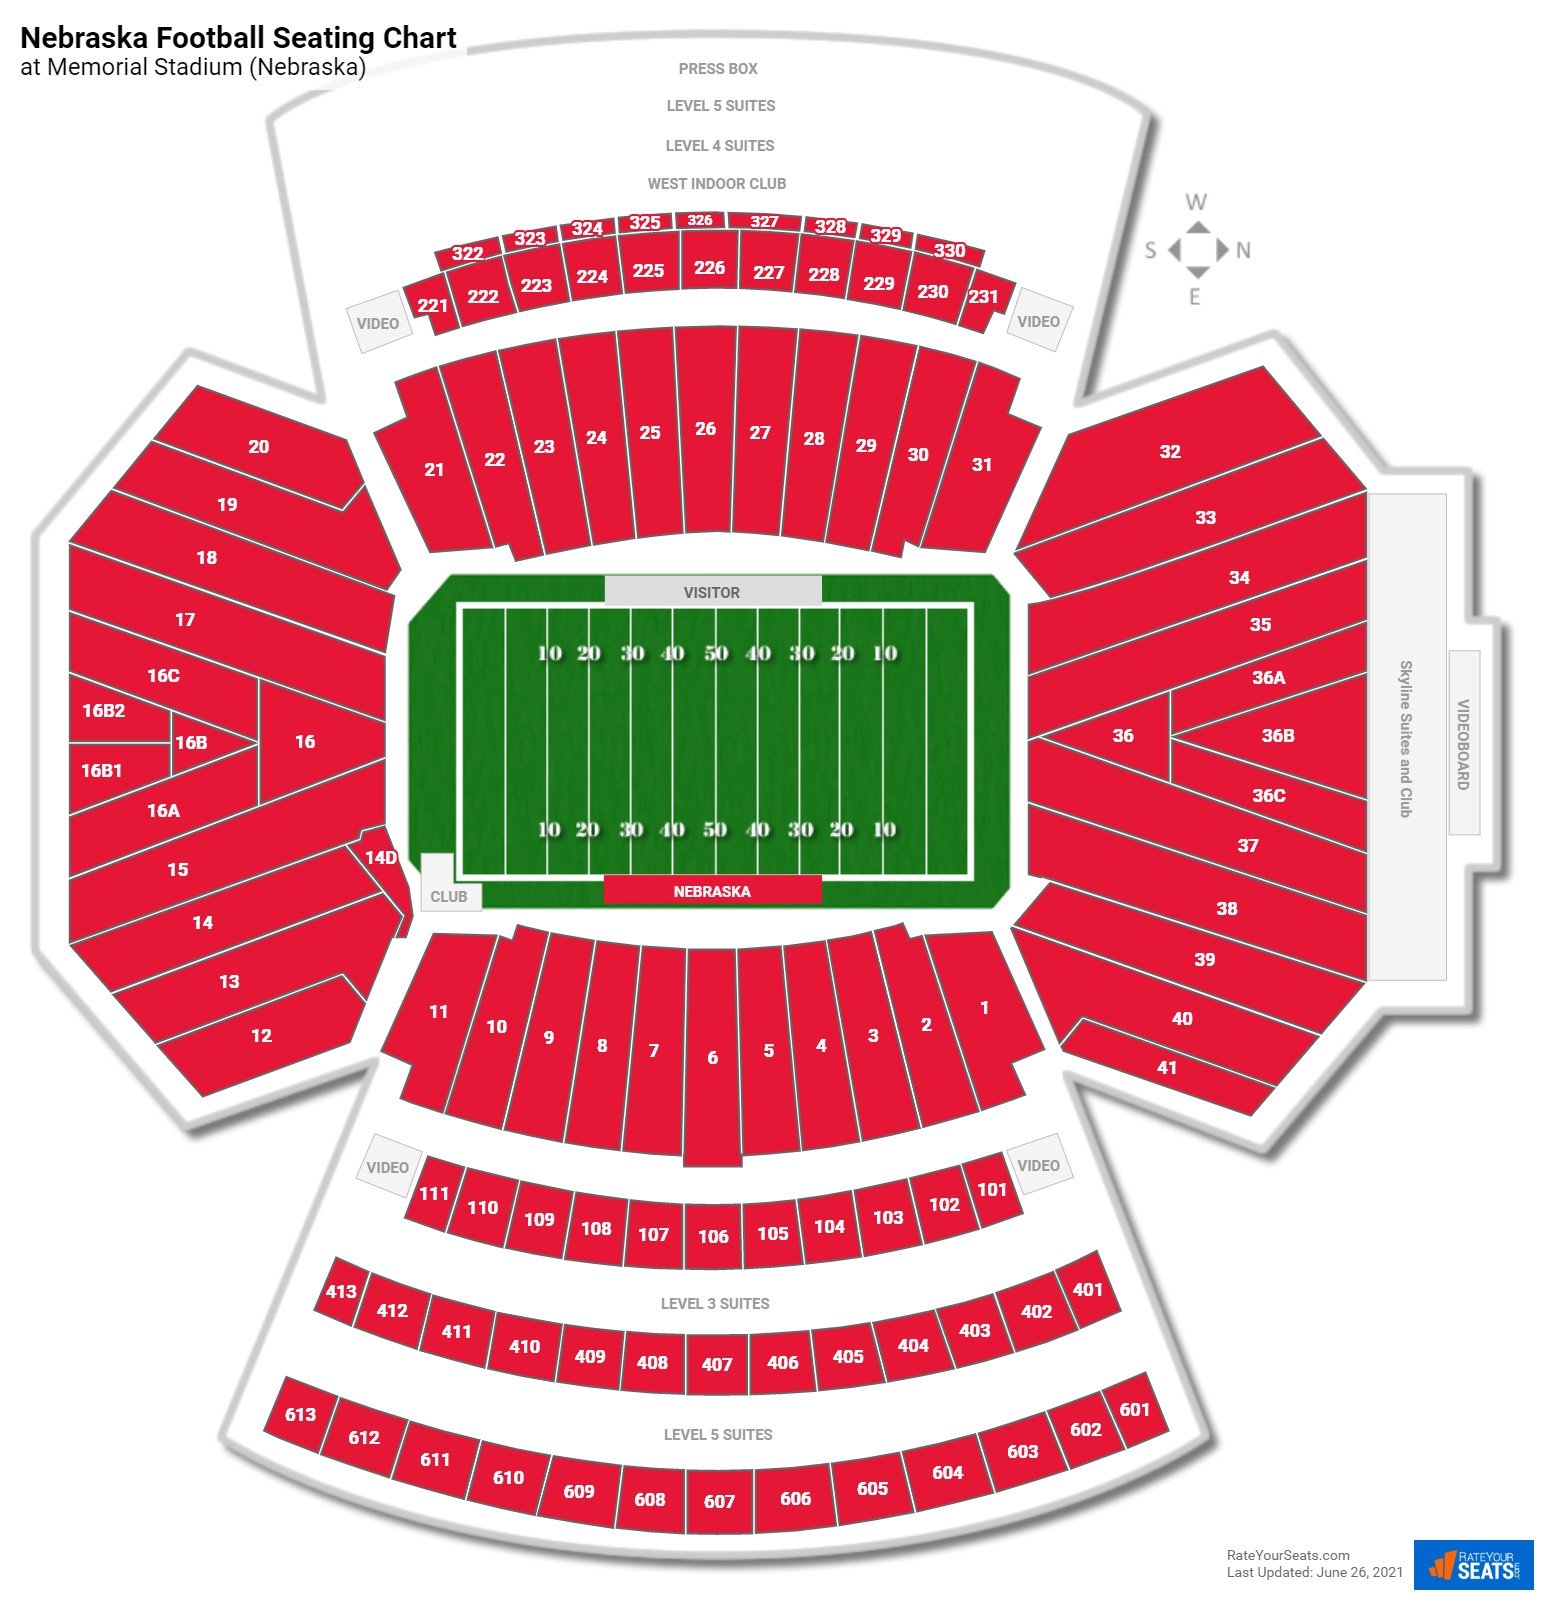 nebraska-football-seating-chart-at-memorial-stadium-(nebraska).jpg